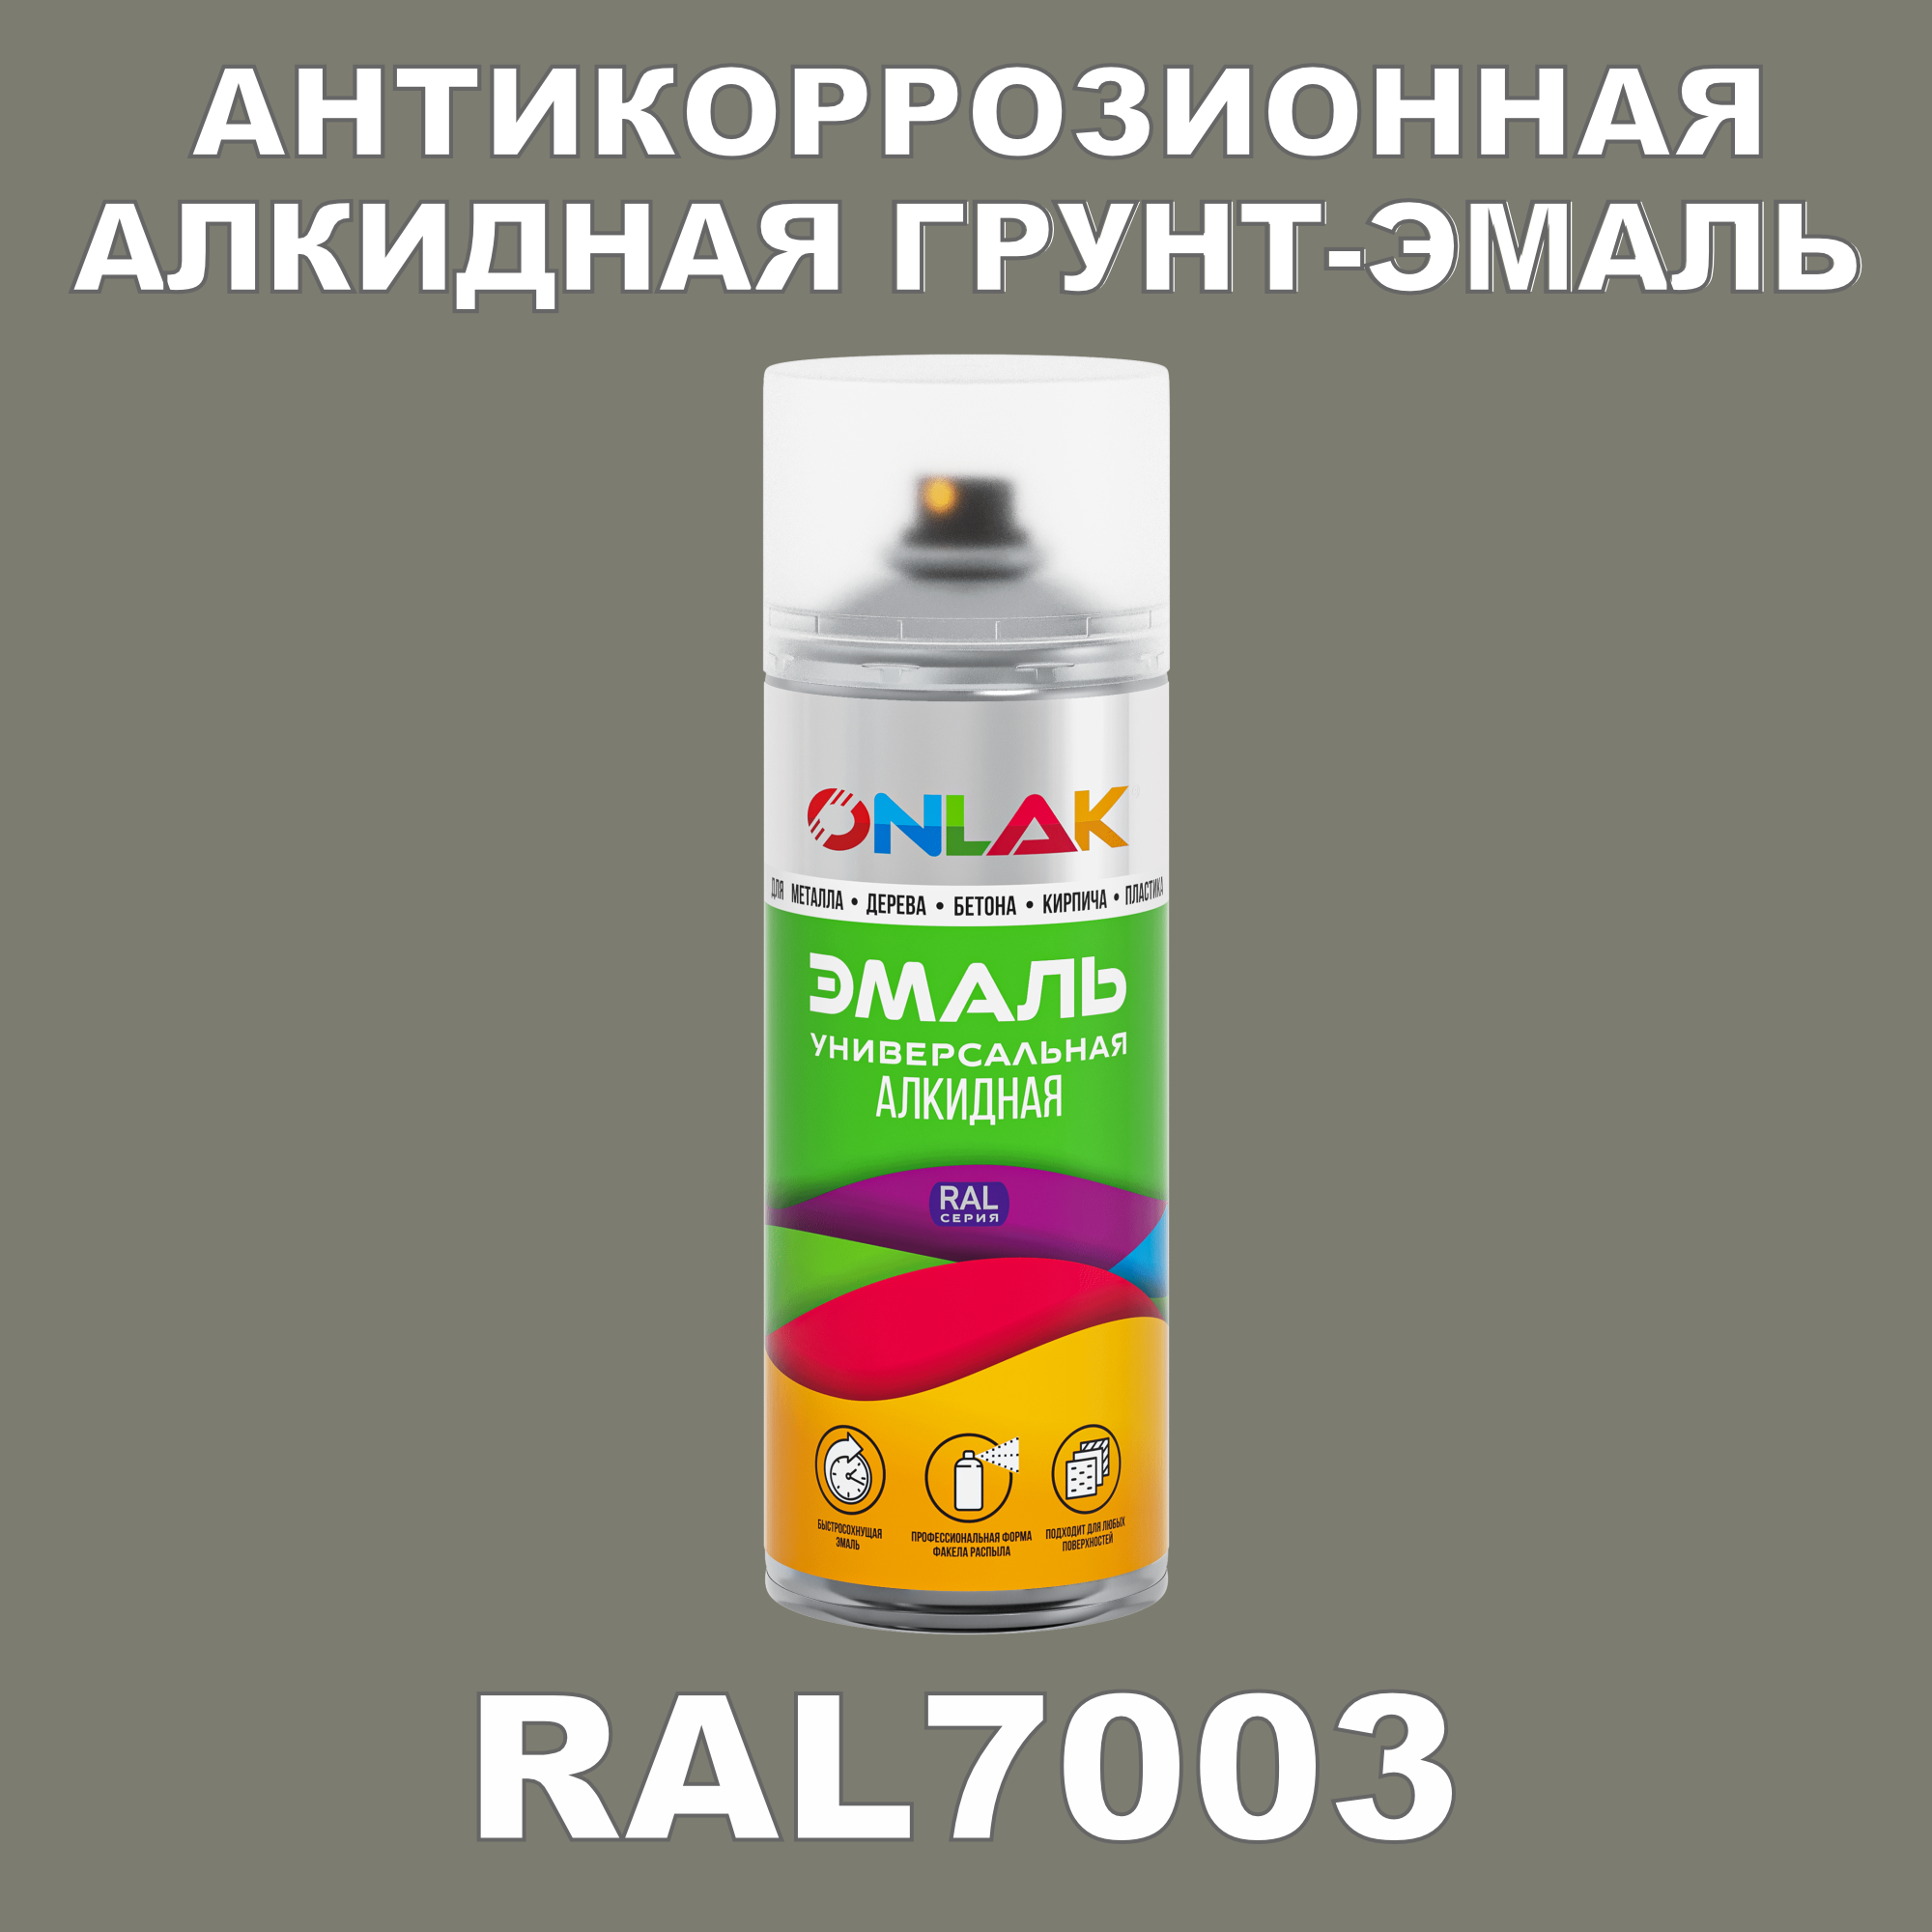 Антикоррозионная грунт-эмаль ONLAK RAL7003 полуматовая для металла и защиты от ржавчины